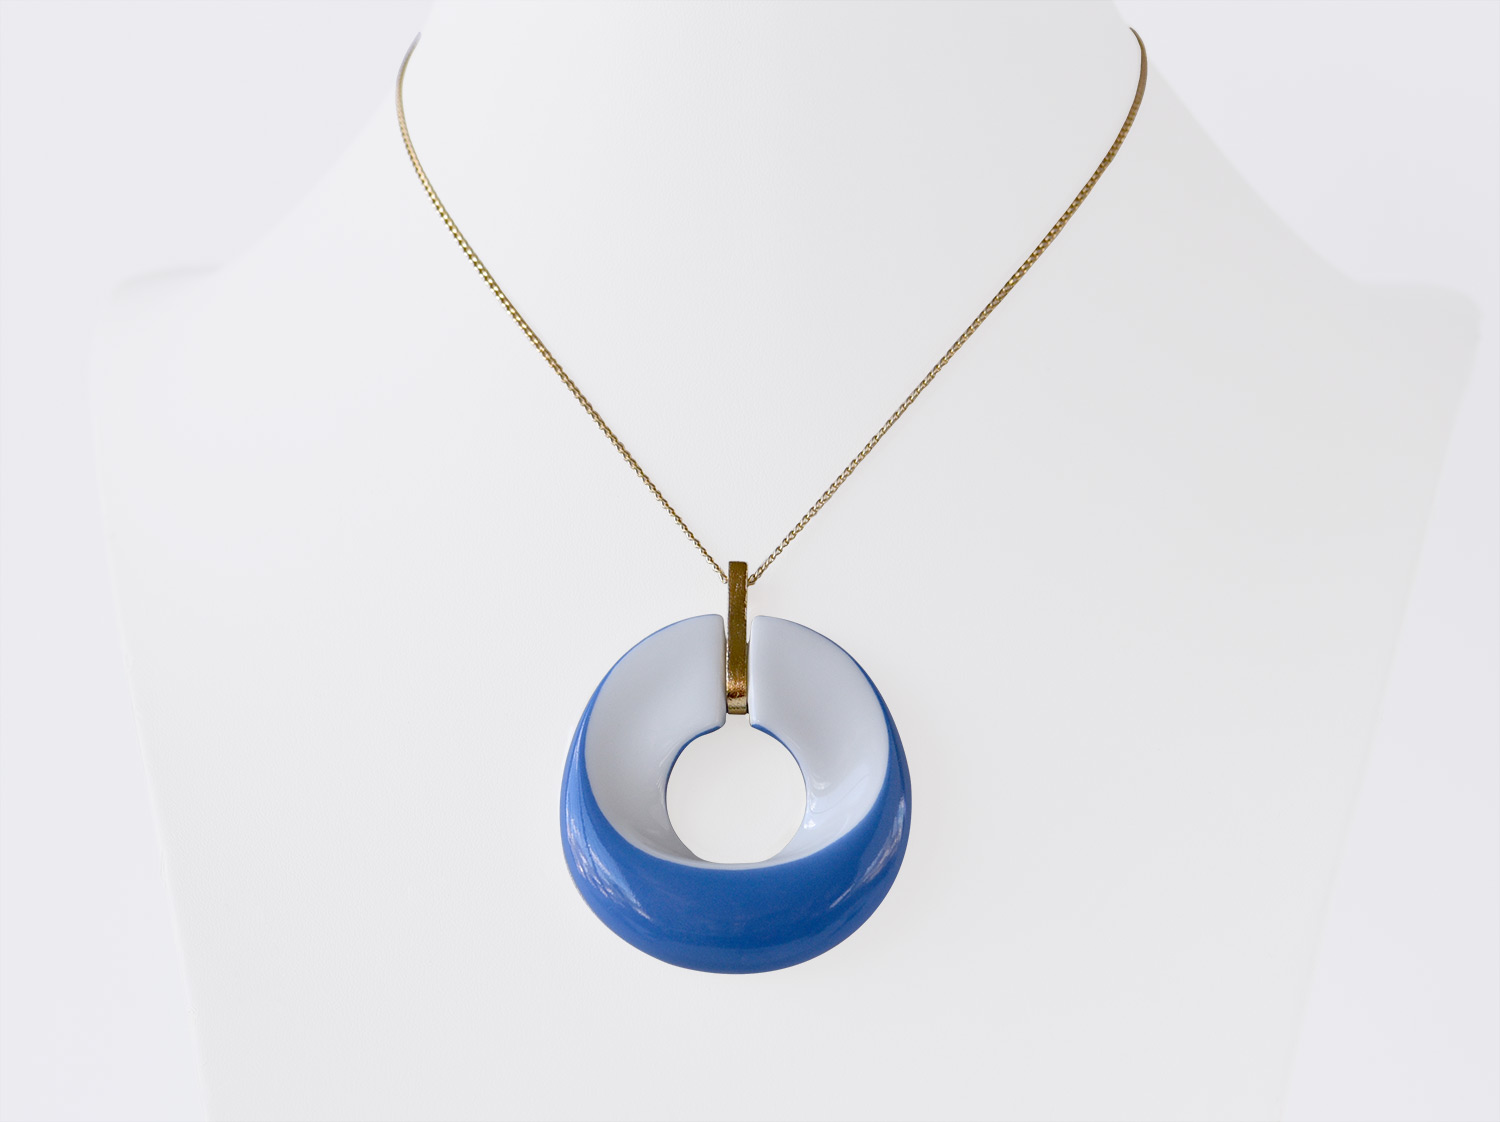 China Alba bleu Pendant of the collection ALBA BLEU | Bernardaud